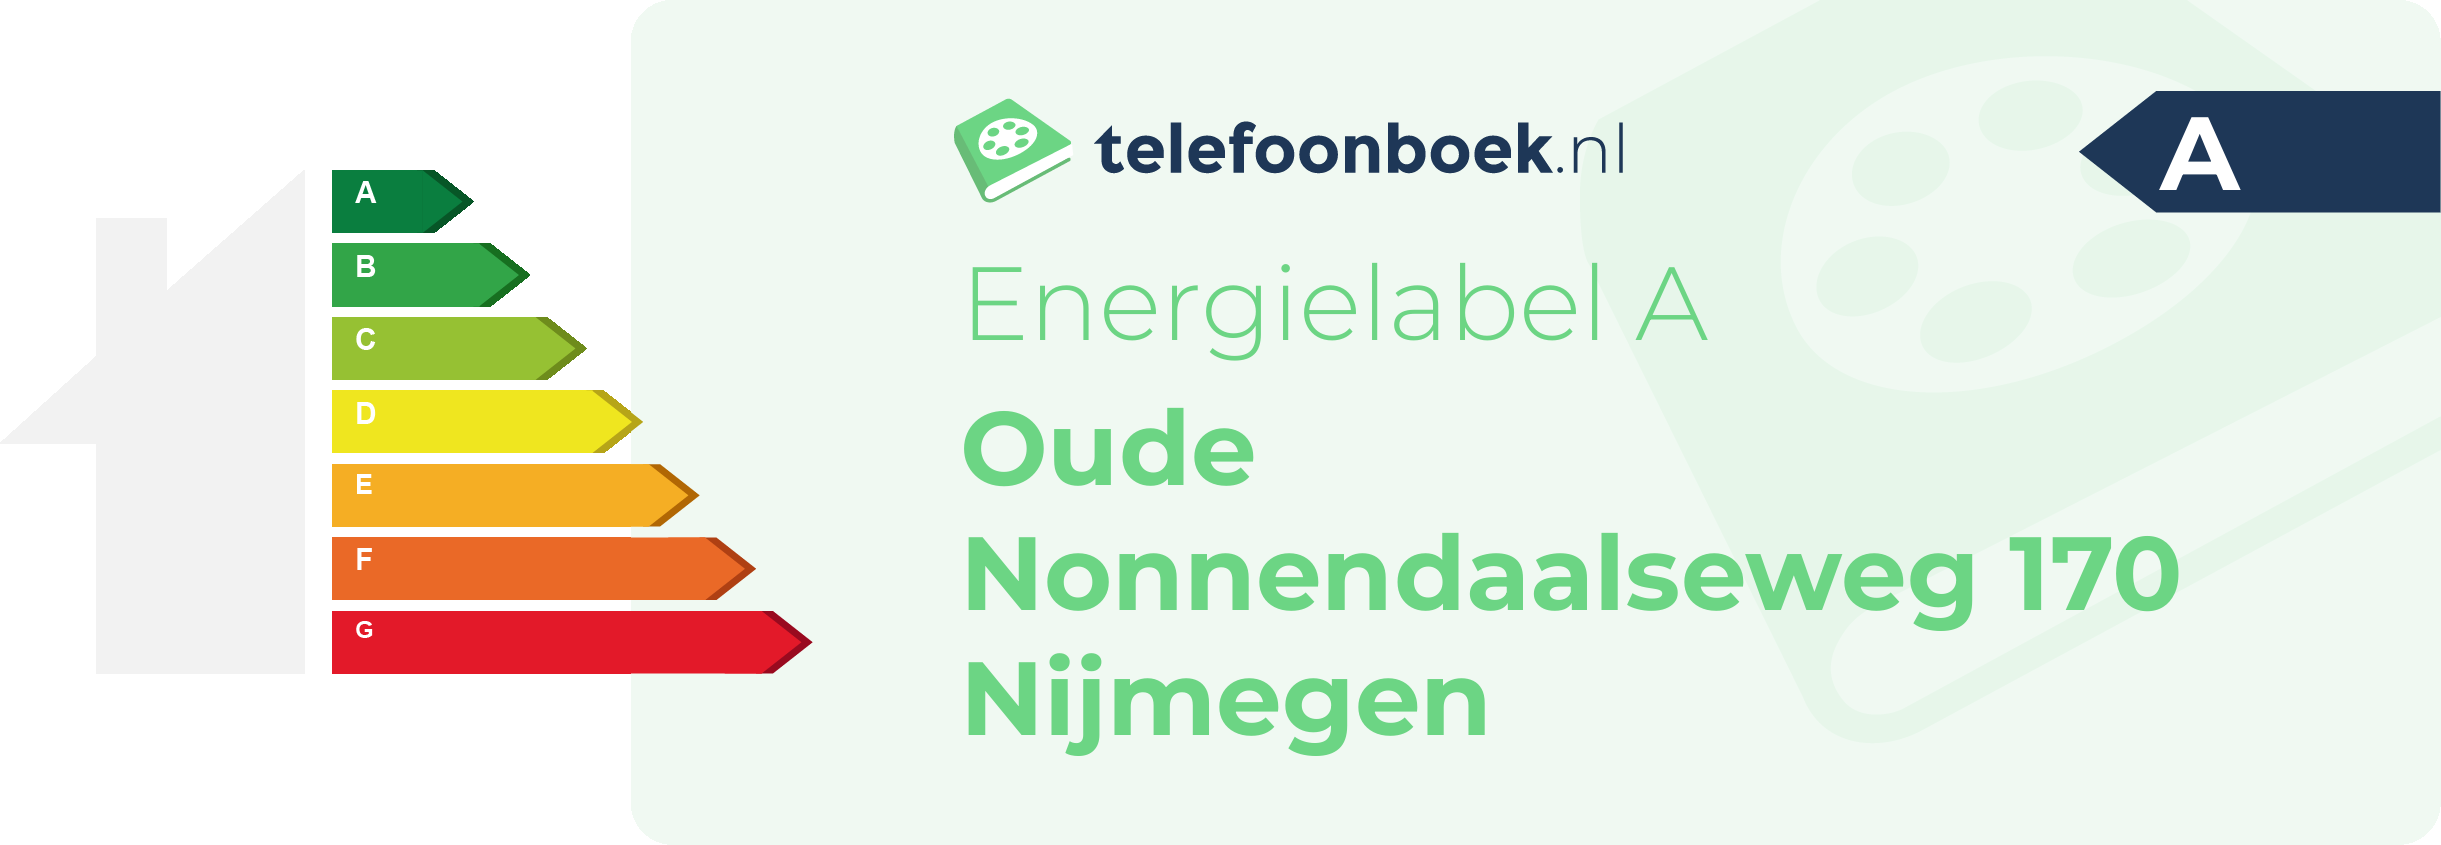 Energielabel Oude Nonnendaalseweg 170 Nijmegen